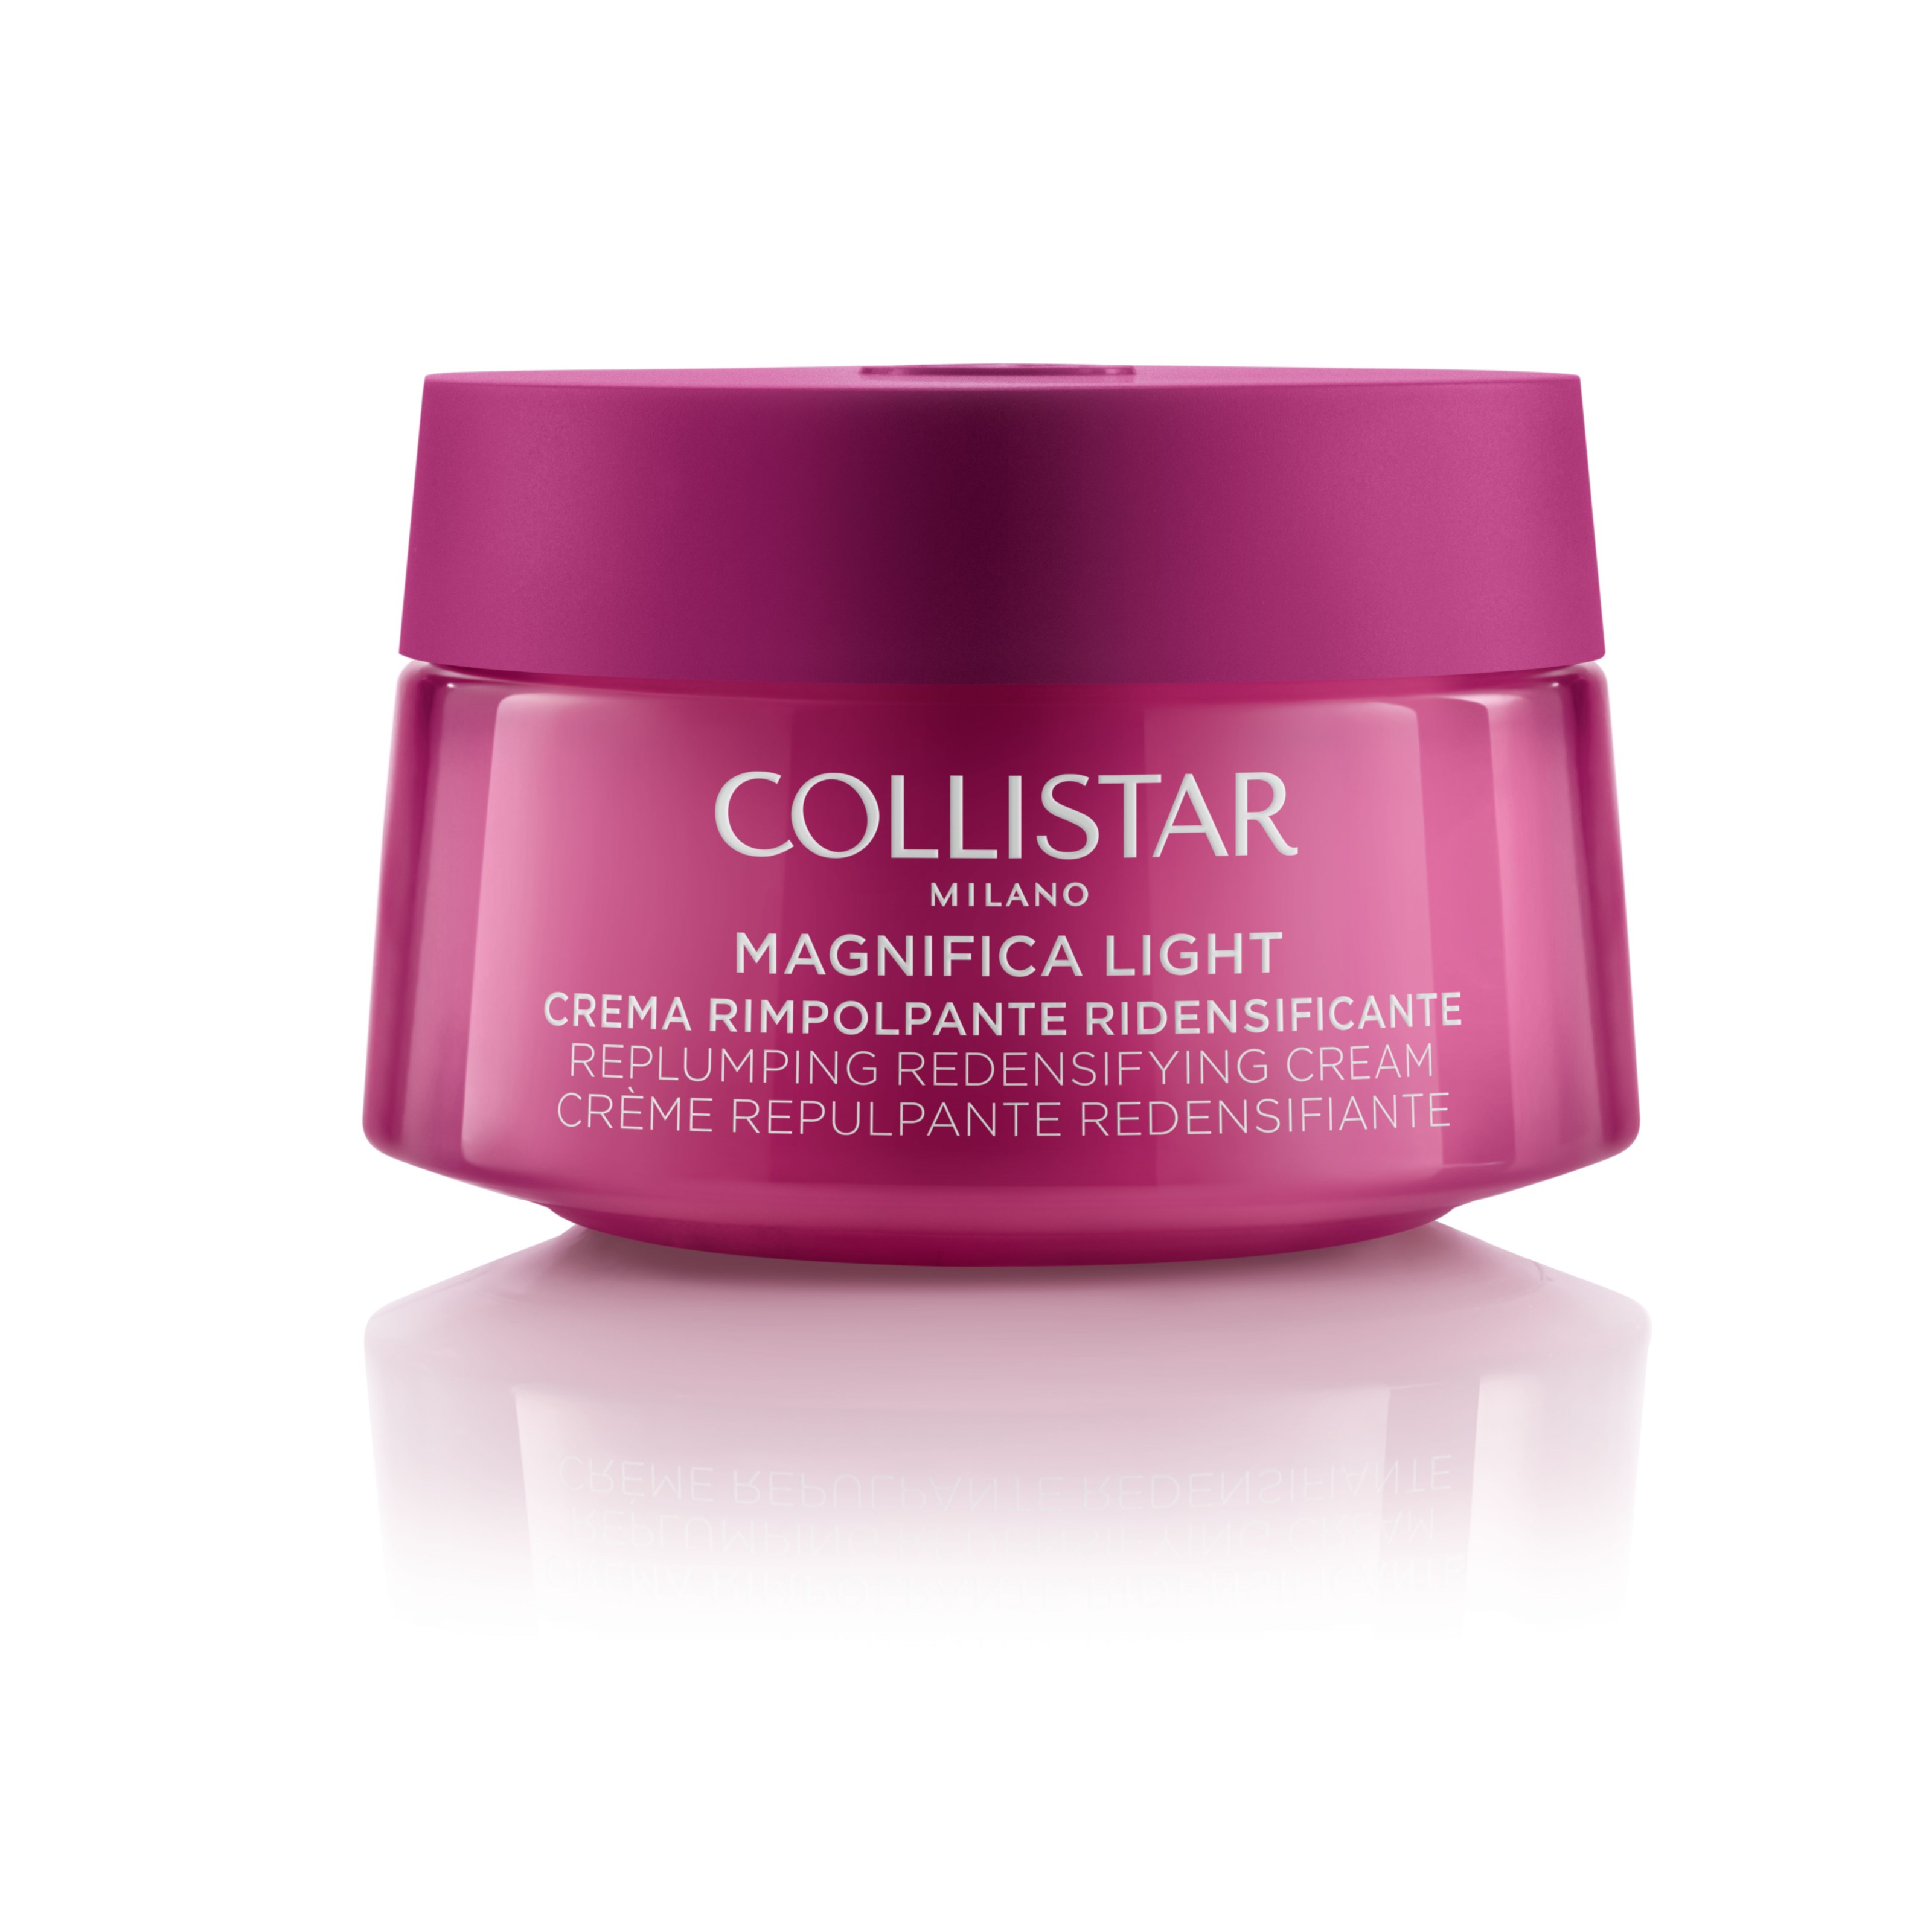 Bilde av Collistar Magnifica Light Replumping Regenerating Face & Neck Cream 50